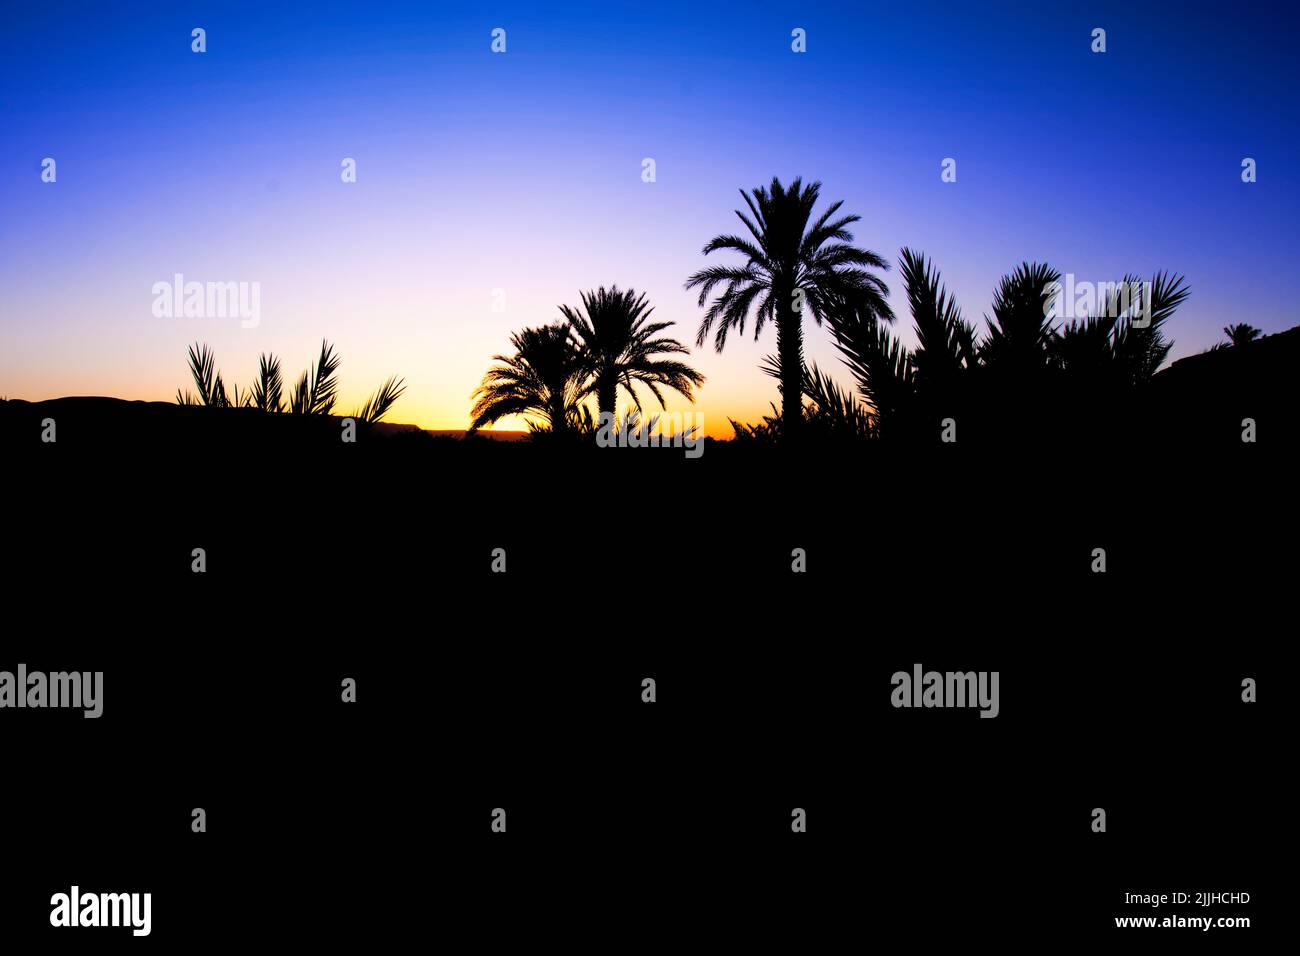 Hermosa puesta de sol detrás del desierto del Sahara. Azul, amarillo y naranja cielo en el fondo, siluetas de palmeras en el primer plano, típico sahariano Foto de stock